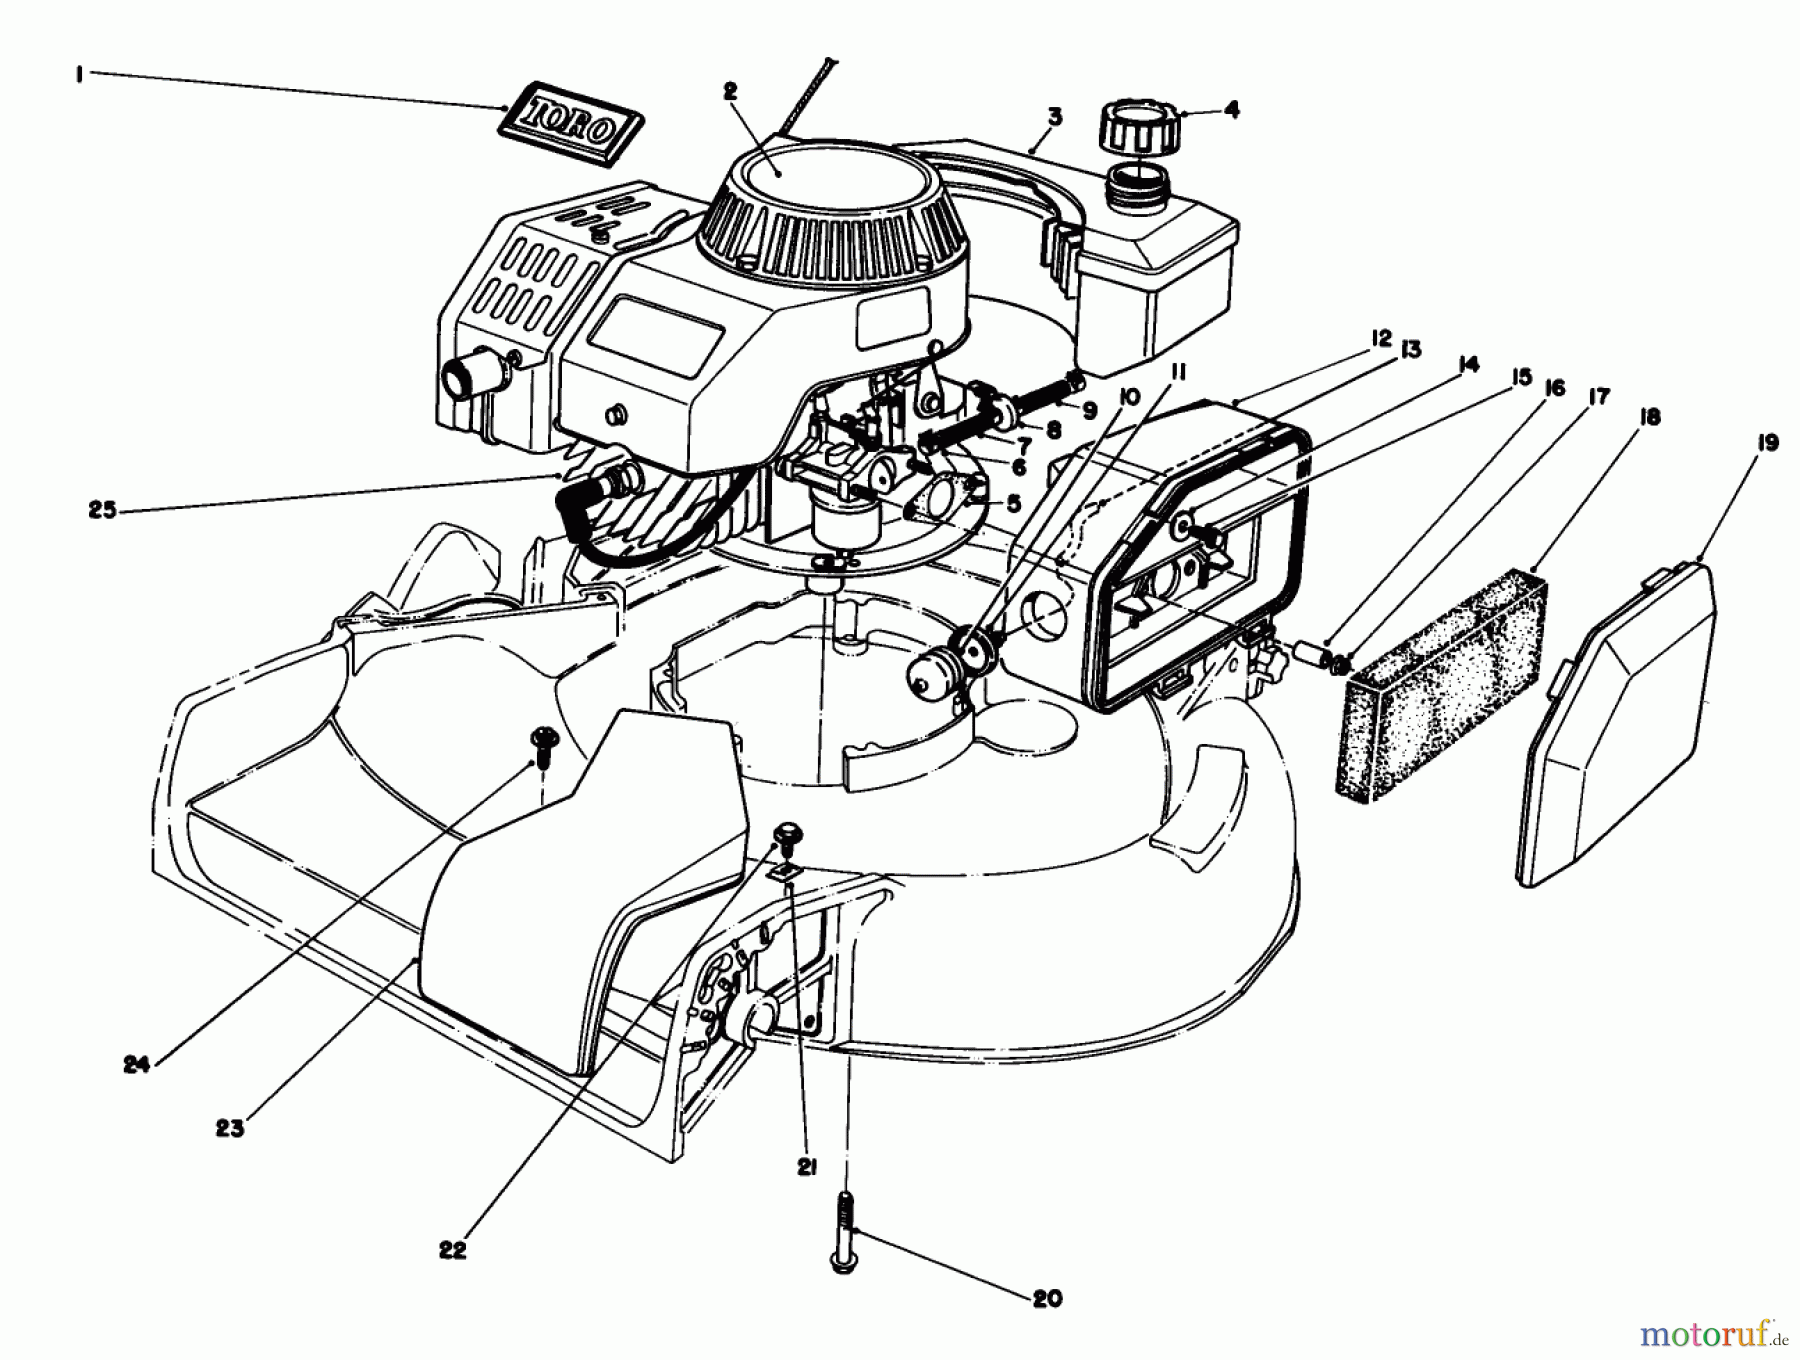  Toro Neu Mowers, Walk-Behind Seite 1 16212C - Toro Lawnmower, 1988 (8000001-8999999) ENGINE ASSEMBLY